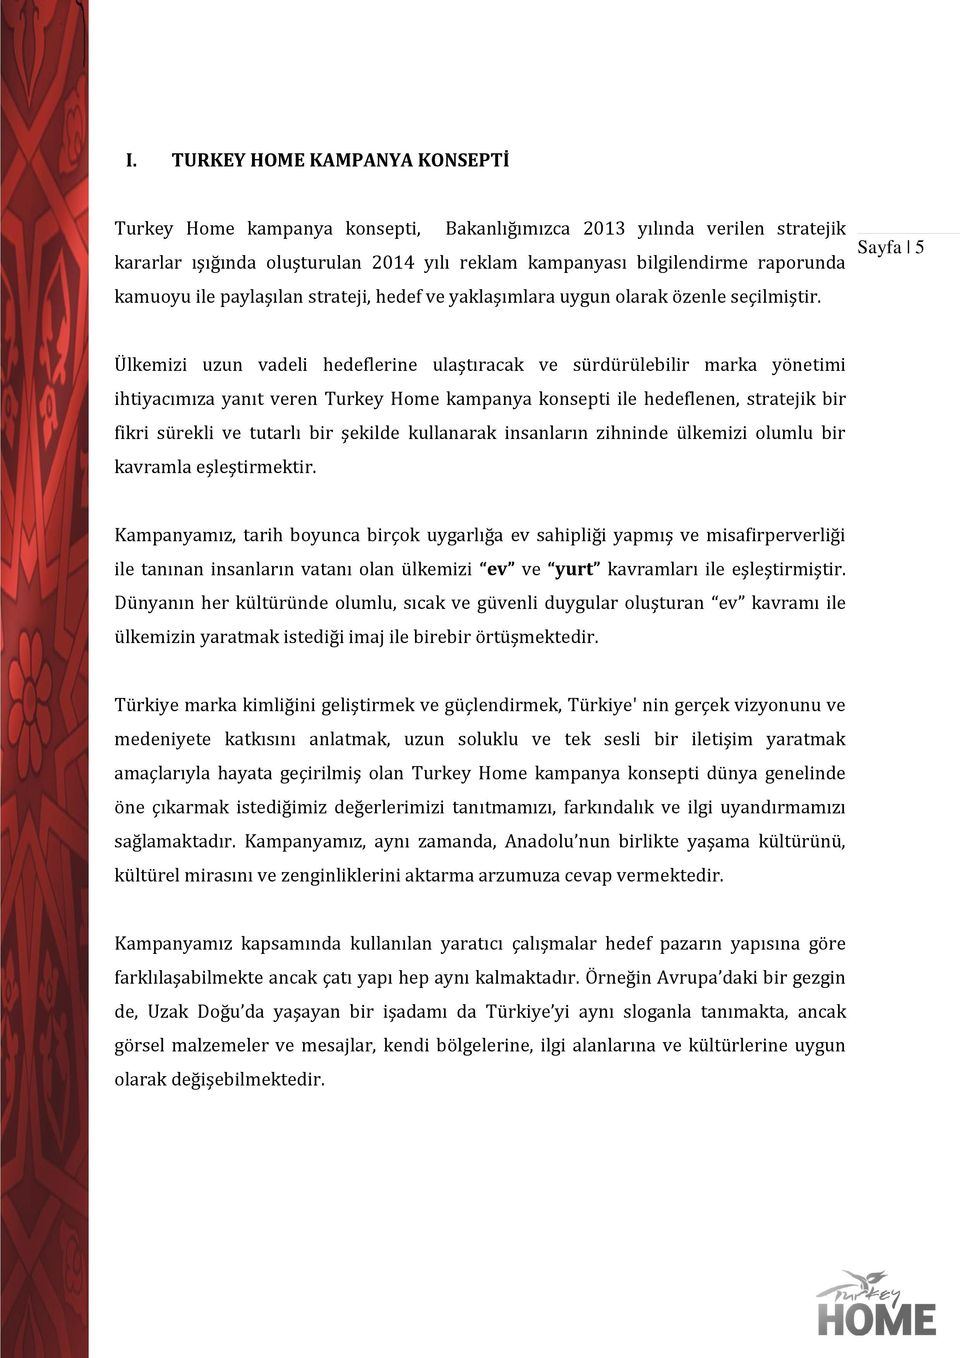 Sayfa 5 Ülkemizi uzun vadeli hedeflerine ulaştıracak ve sürdürülebilir marka yönetimi ihtiyacımıza yanıt veren Turkey Home kampanya konsepti ile hedeflenen, stratejik bir fikri sürekli ve tutarlı bir